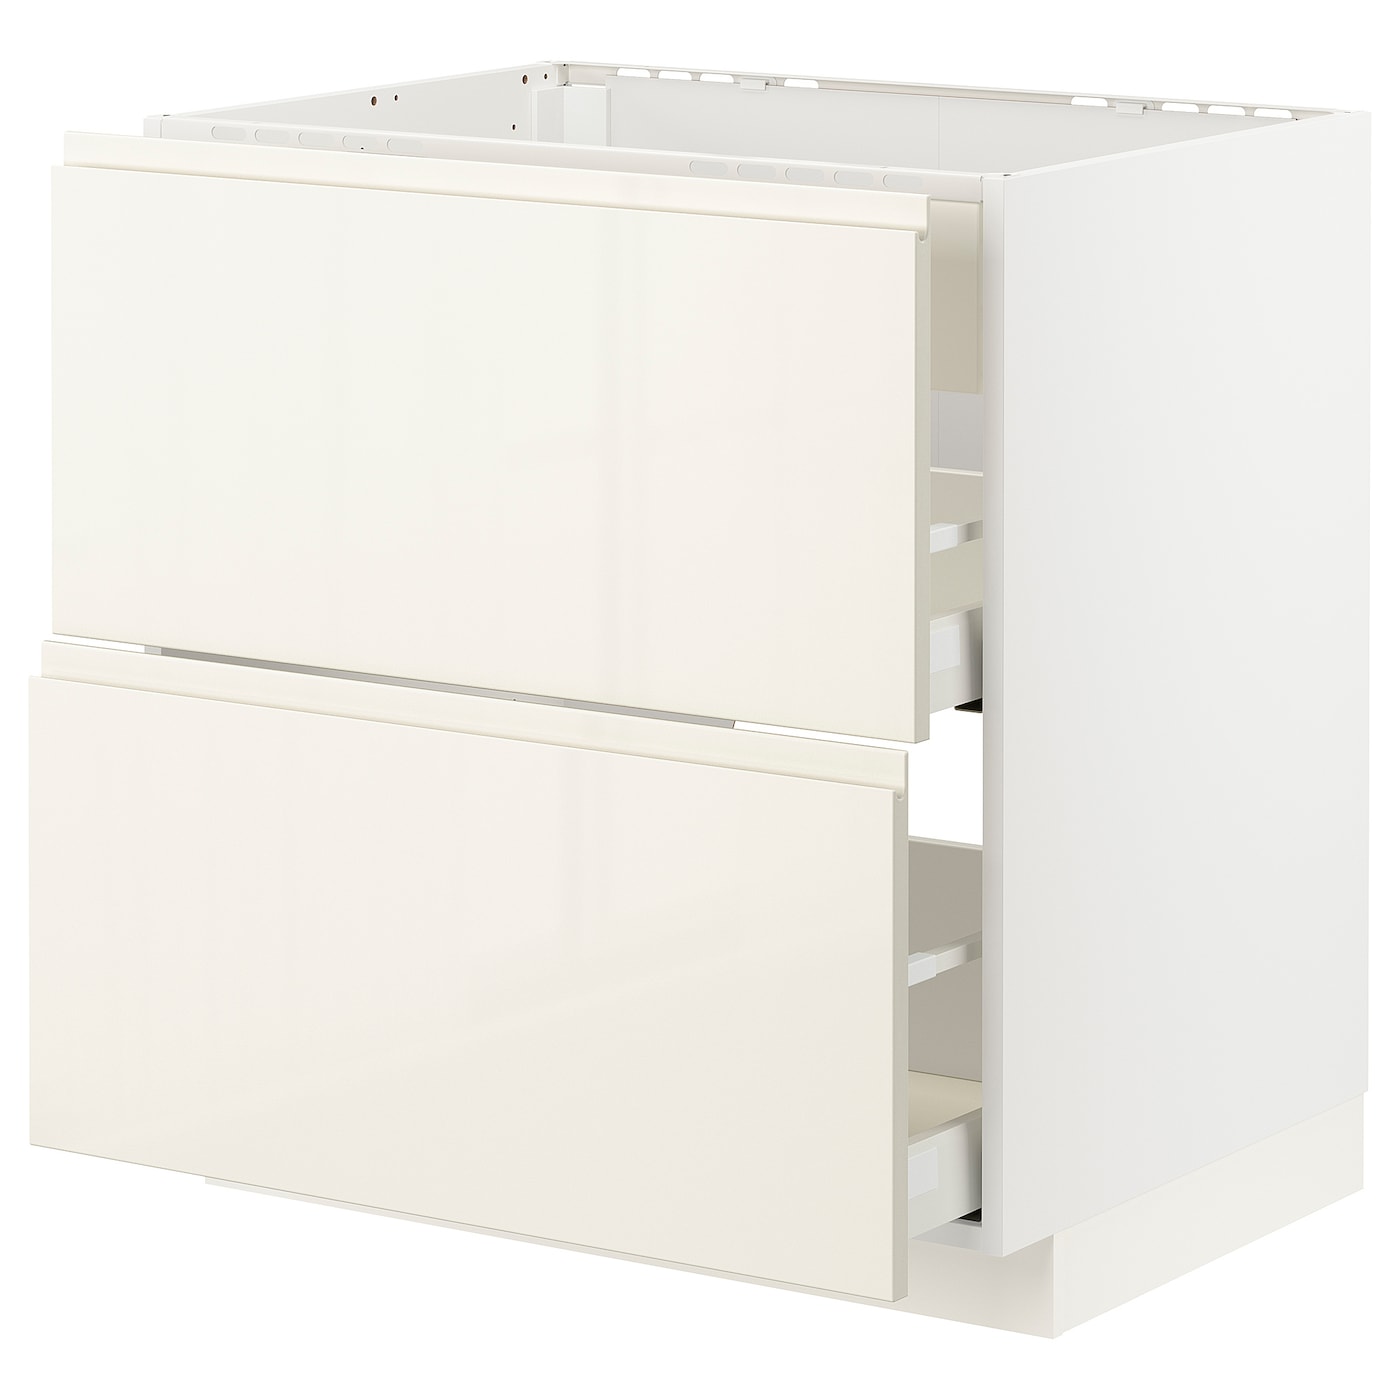 Напольный шкаф - IKEA METOD MAXIMERA, 88x62x80см, белый, МЕТОД МАКСИМЕРА ИКЕА